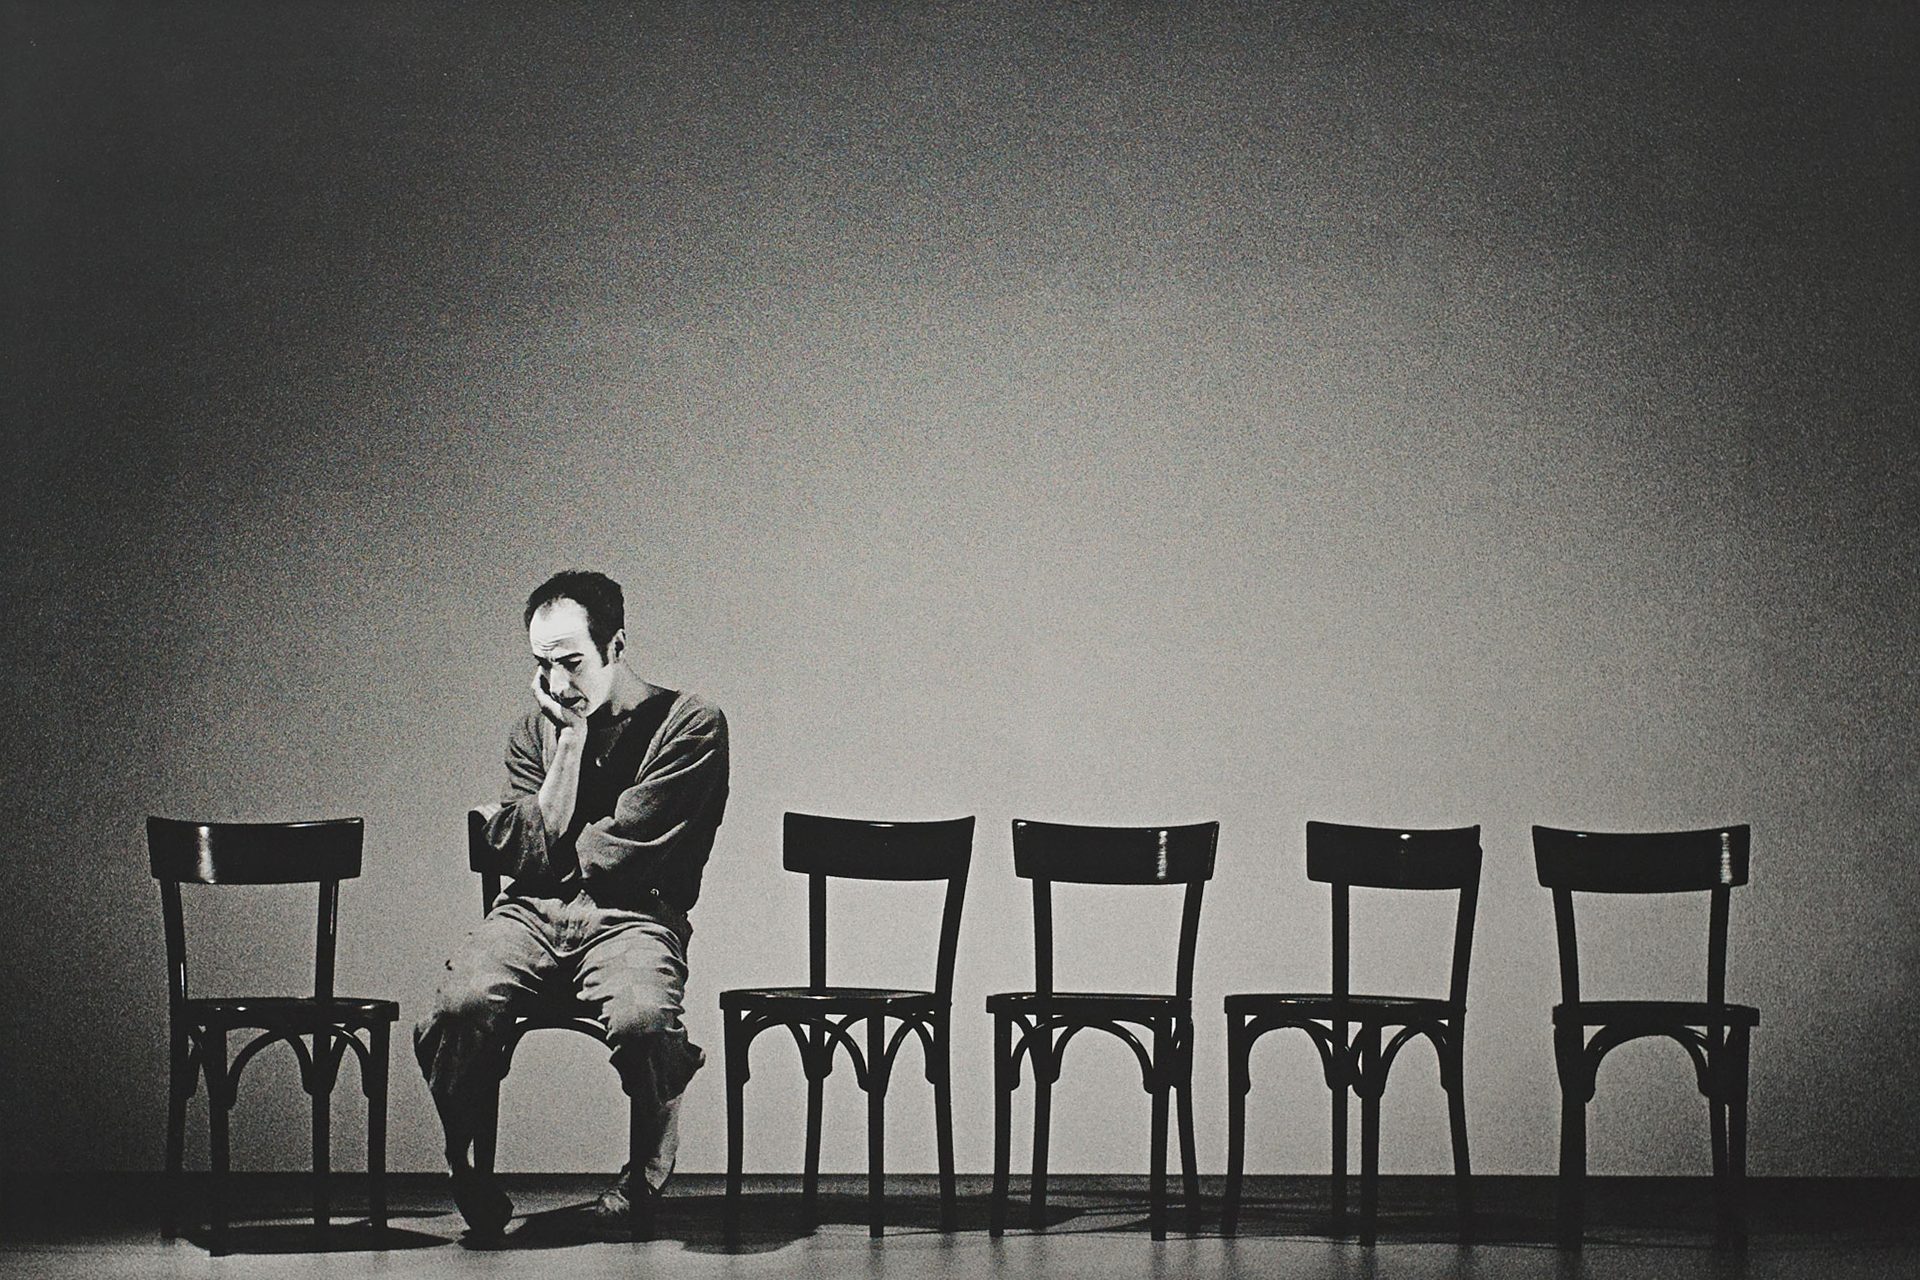 Ein Mann sitzt auf einem von sechs Stühlen. Er ist alleine und wirkt nachdenklich und traurig.